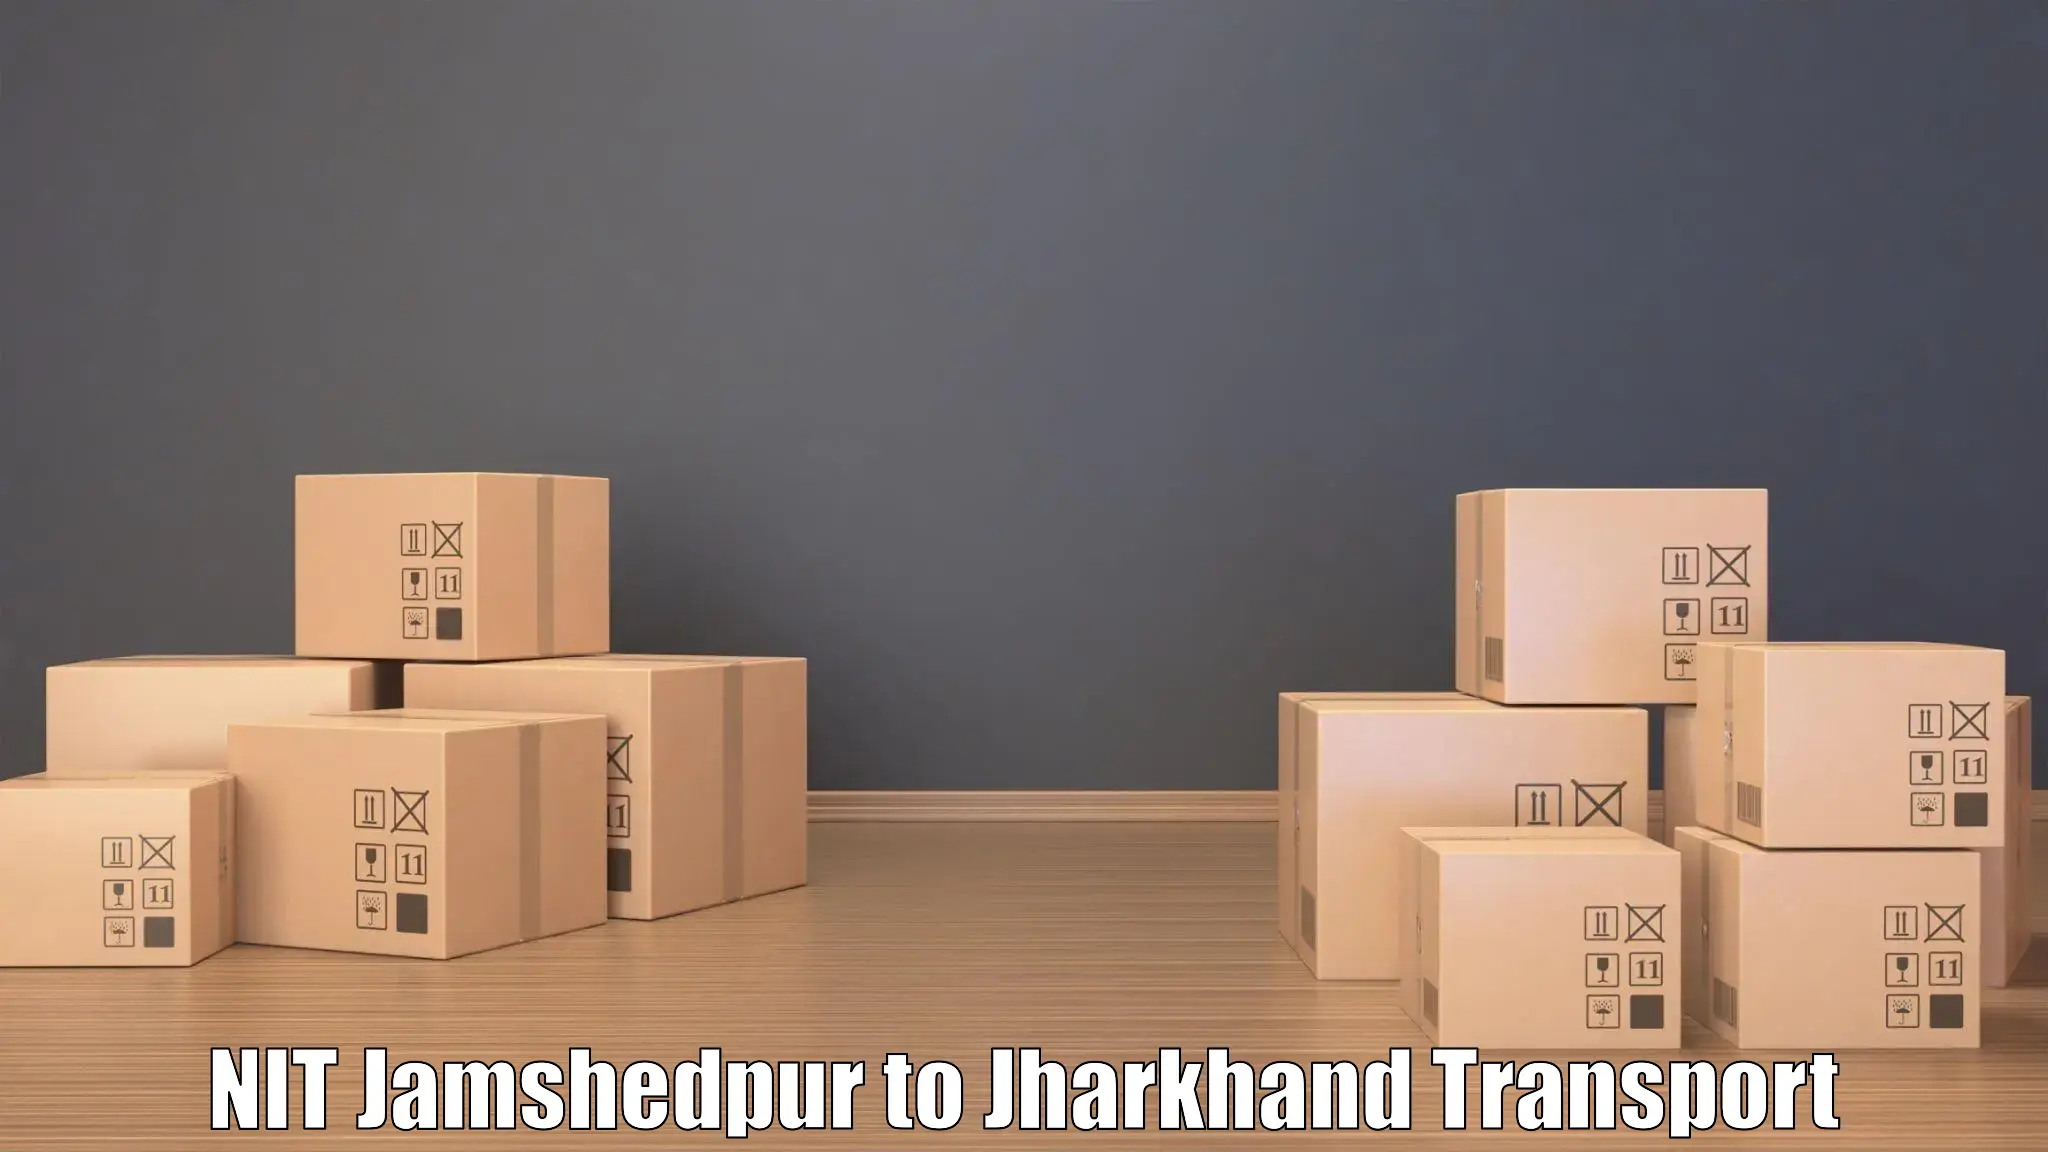 Nearest transport service NIT Jamshedpur to NIT Jamshedpur